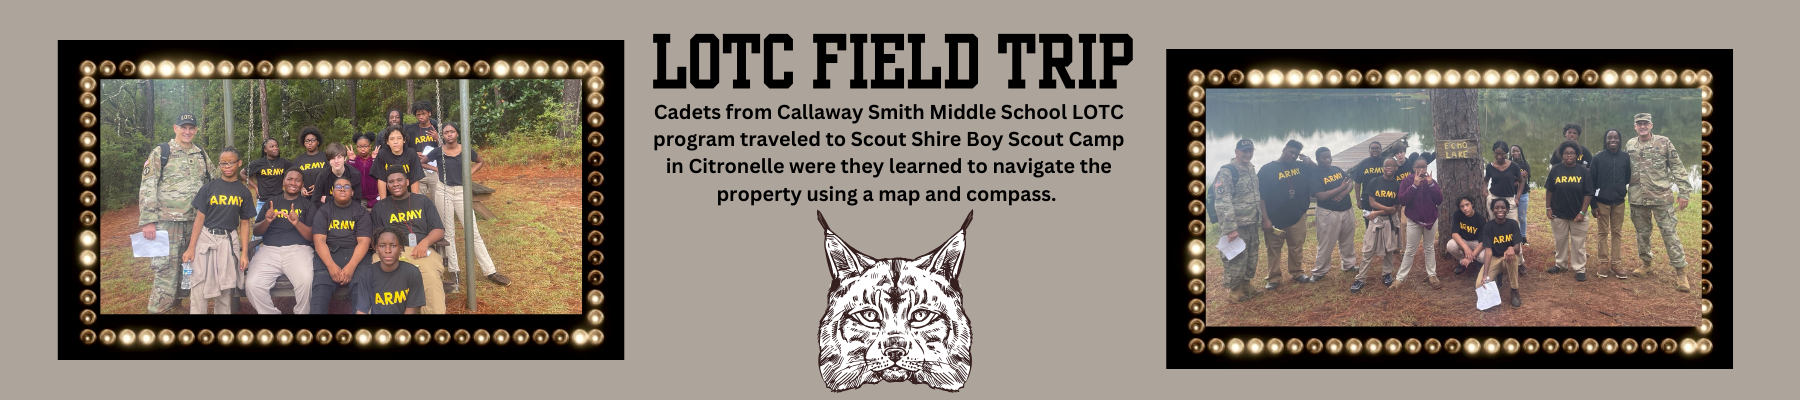 LOTC Field Trip